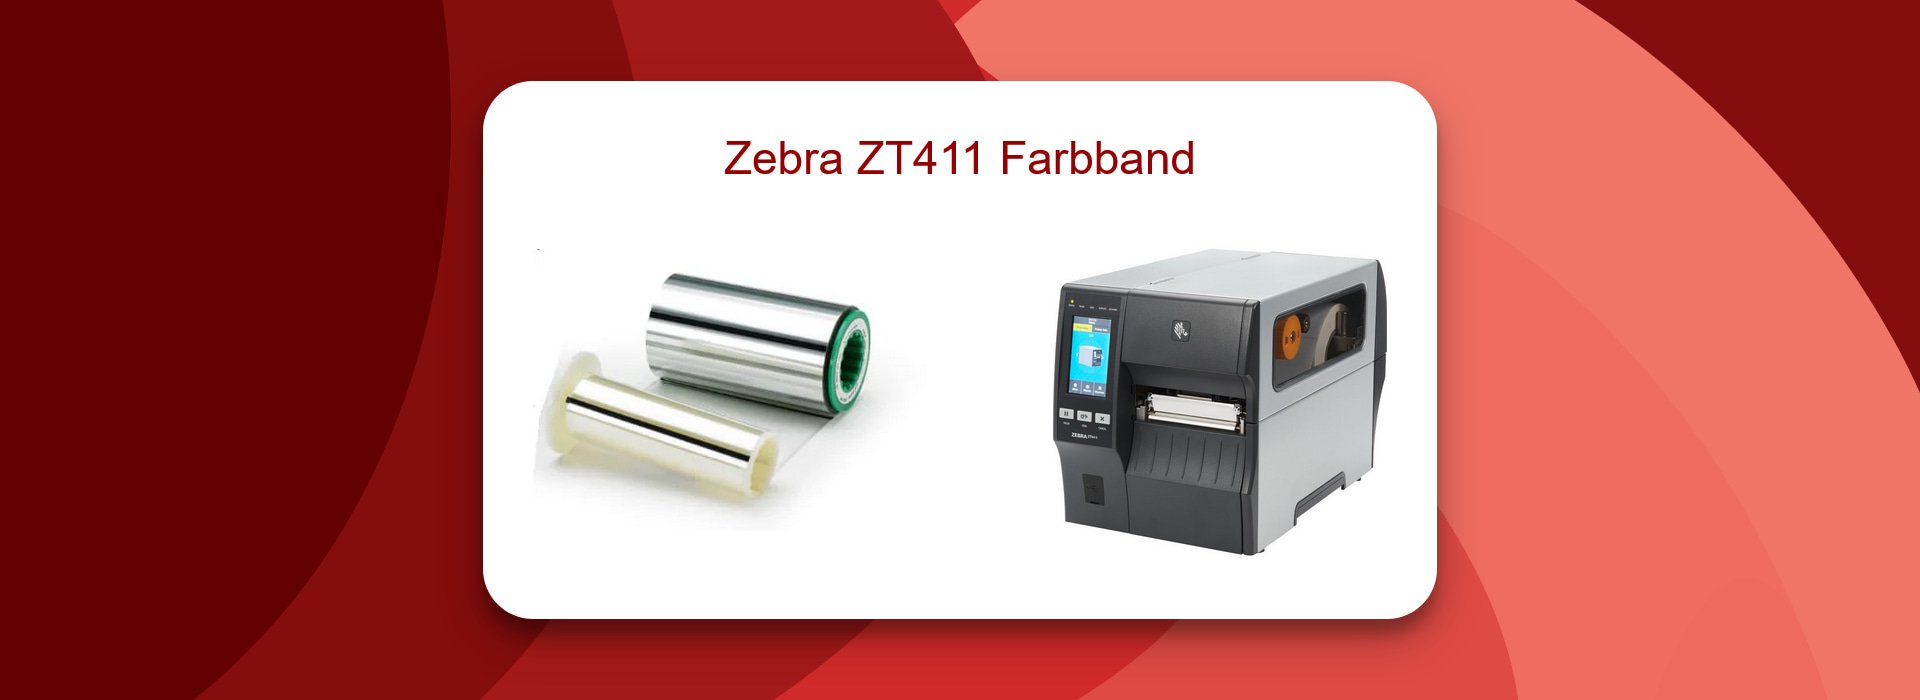 Zebra ZT411 Farbband: Qualität und Preis